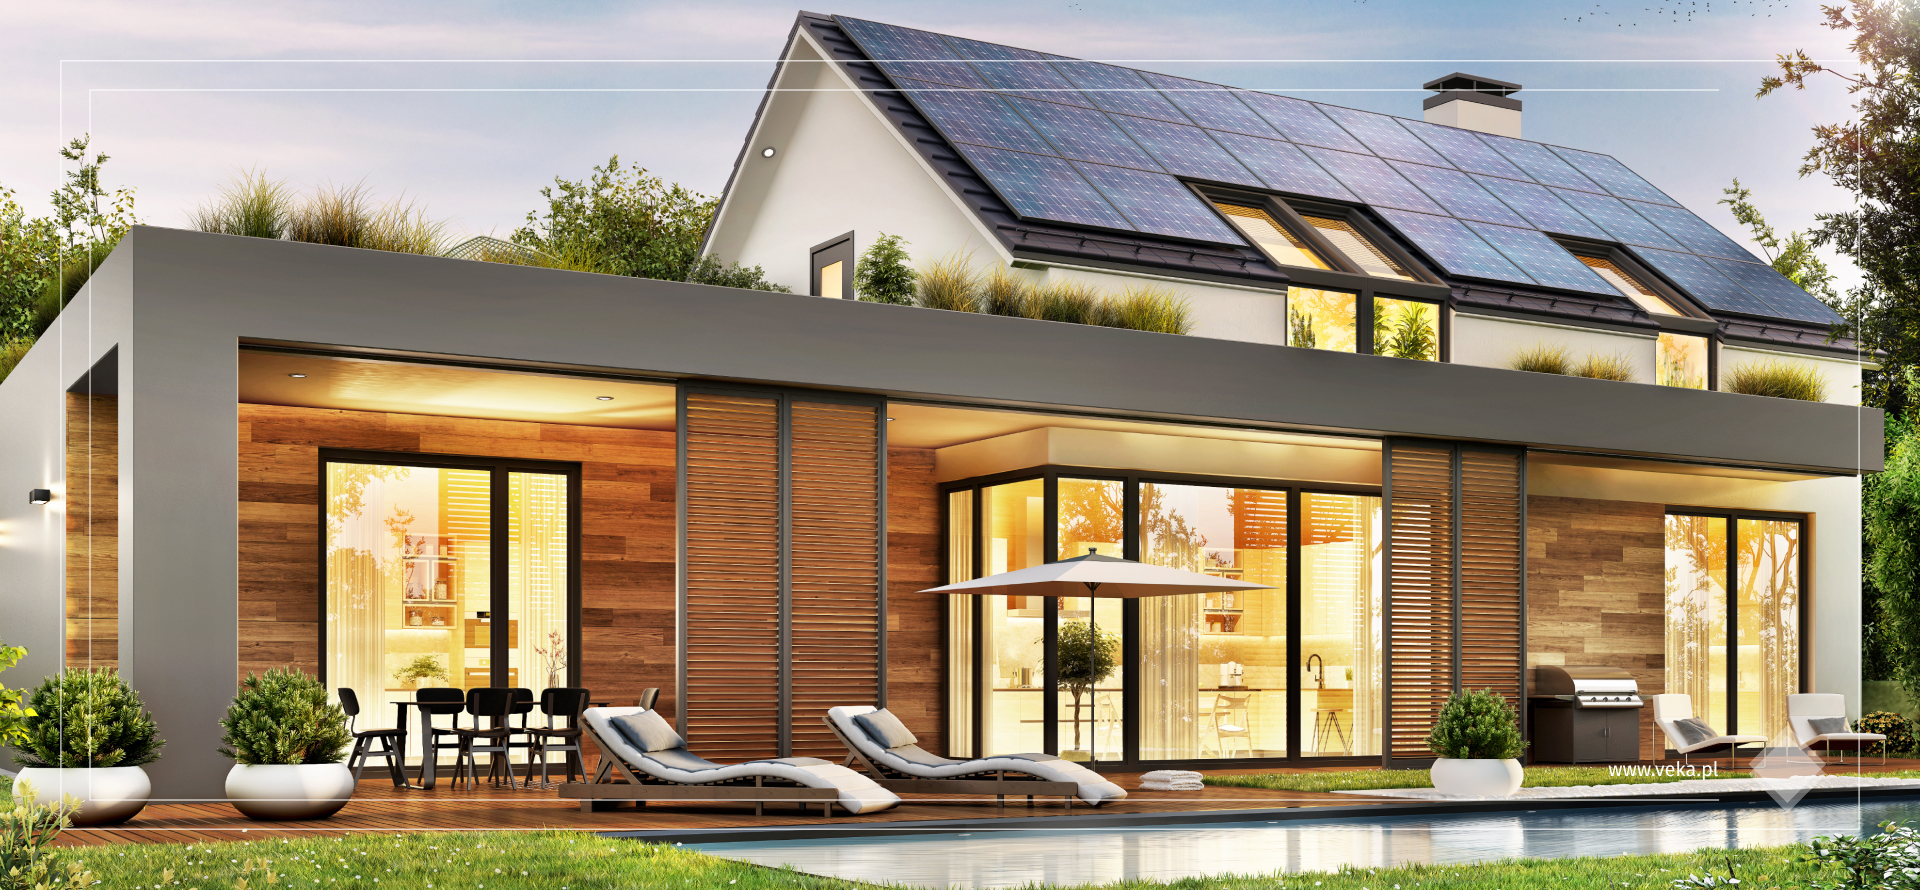 You are currently viewing Jak okna mogą obniżać rachunki za energię, czyli o efektywności energetycznej domu